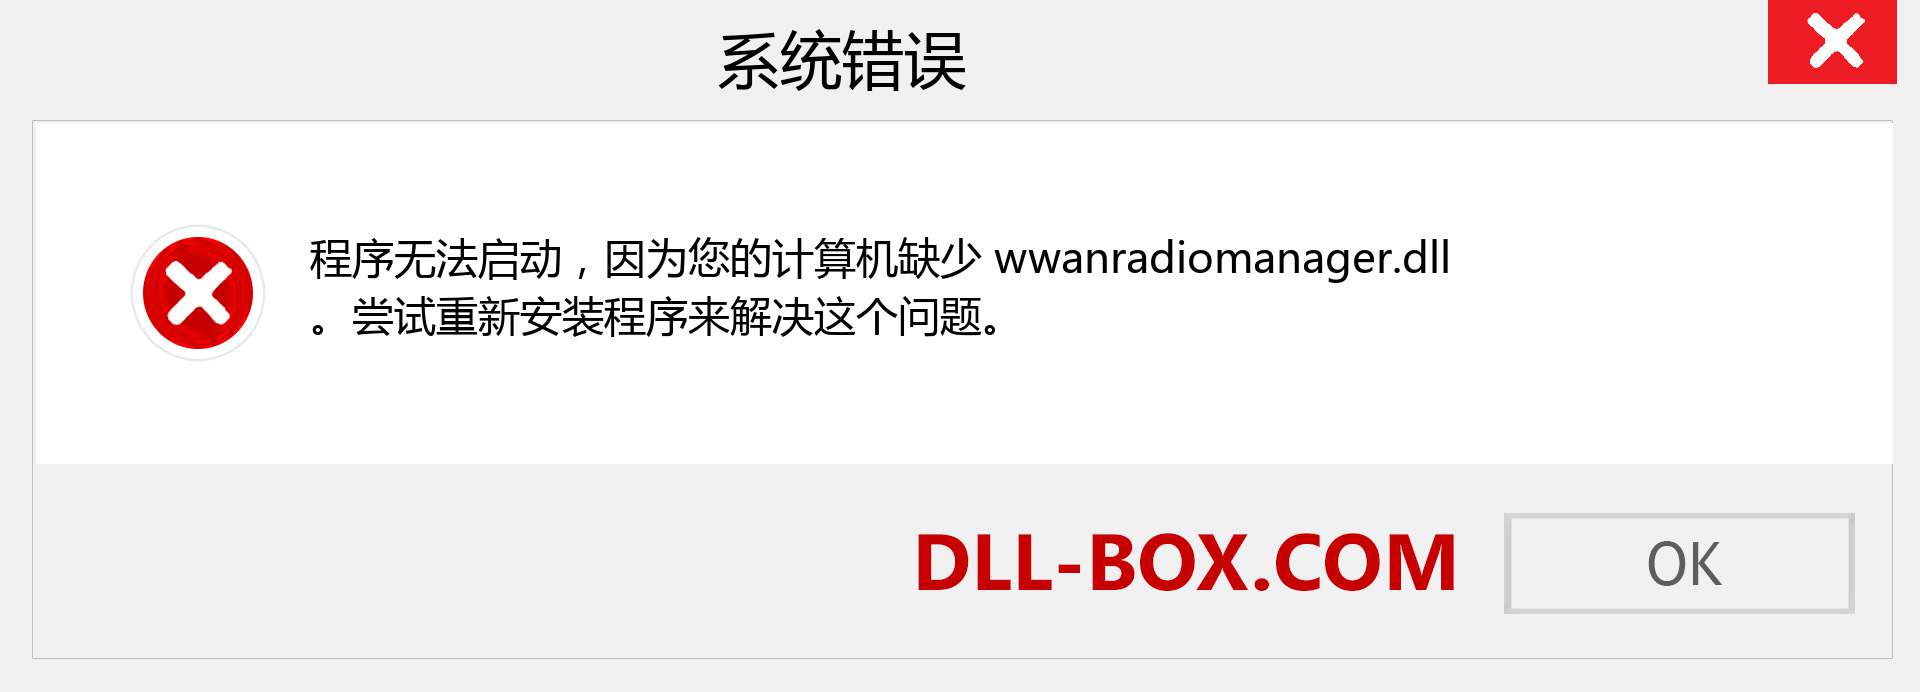 wwanradiomanager.dll 文件丢失？。 适用于 Windows 7、8、10 的下载 - 修复 Windows、照片、图像上的 wwanradiomanager dll 丢失错误